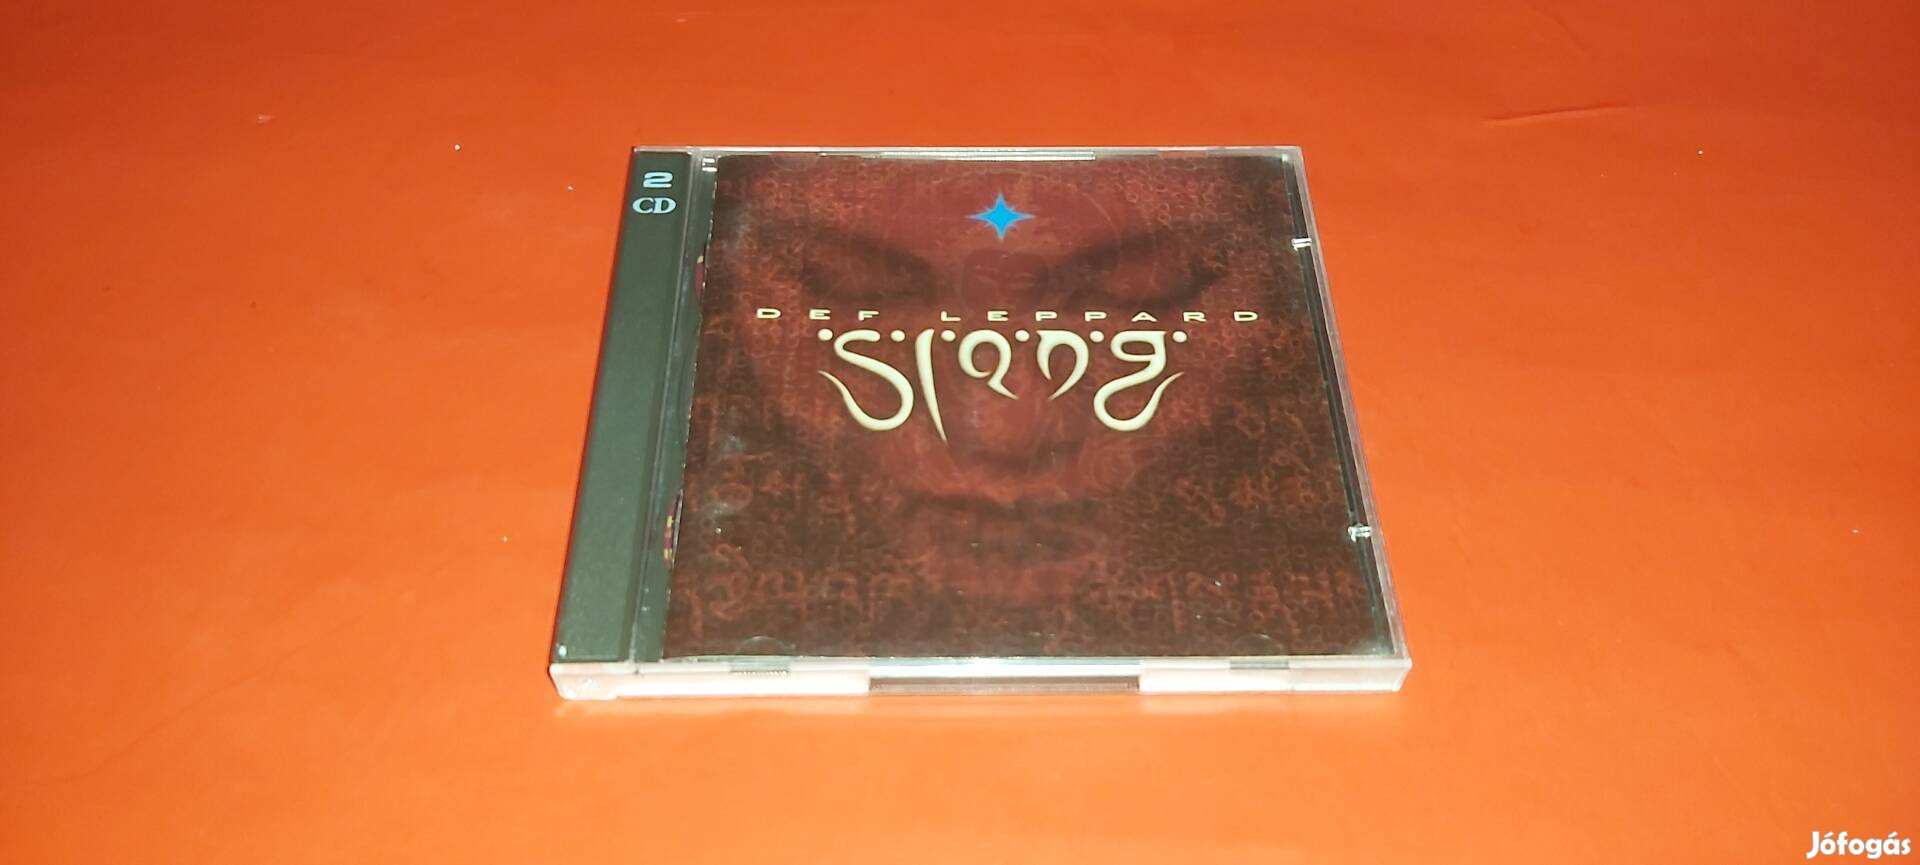 Def Leppard Slang dupla Cd 1996